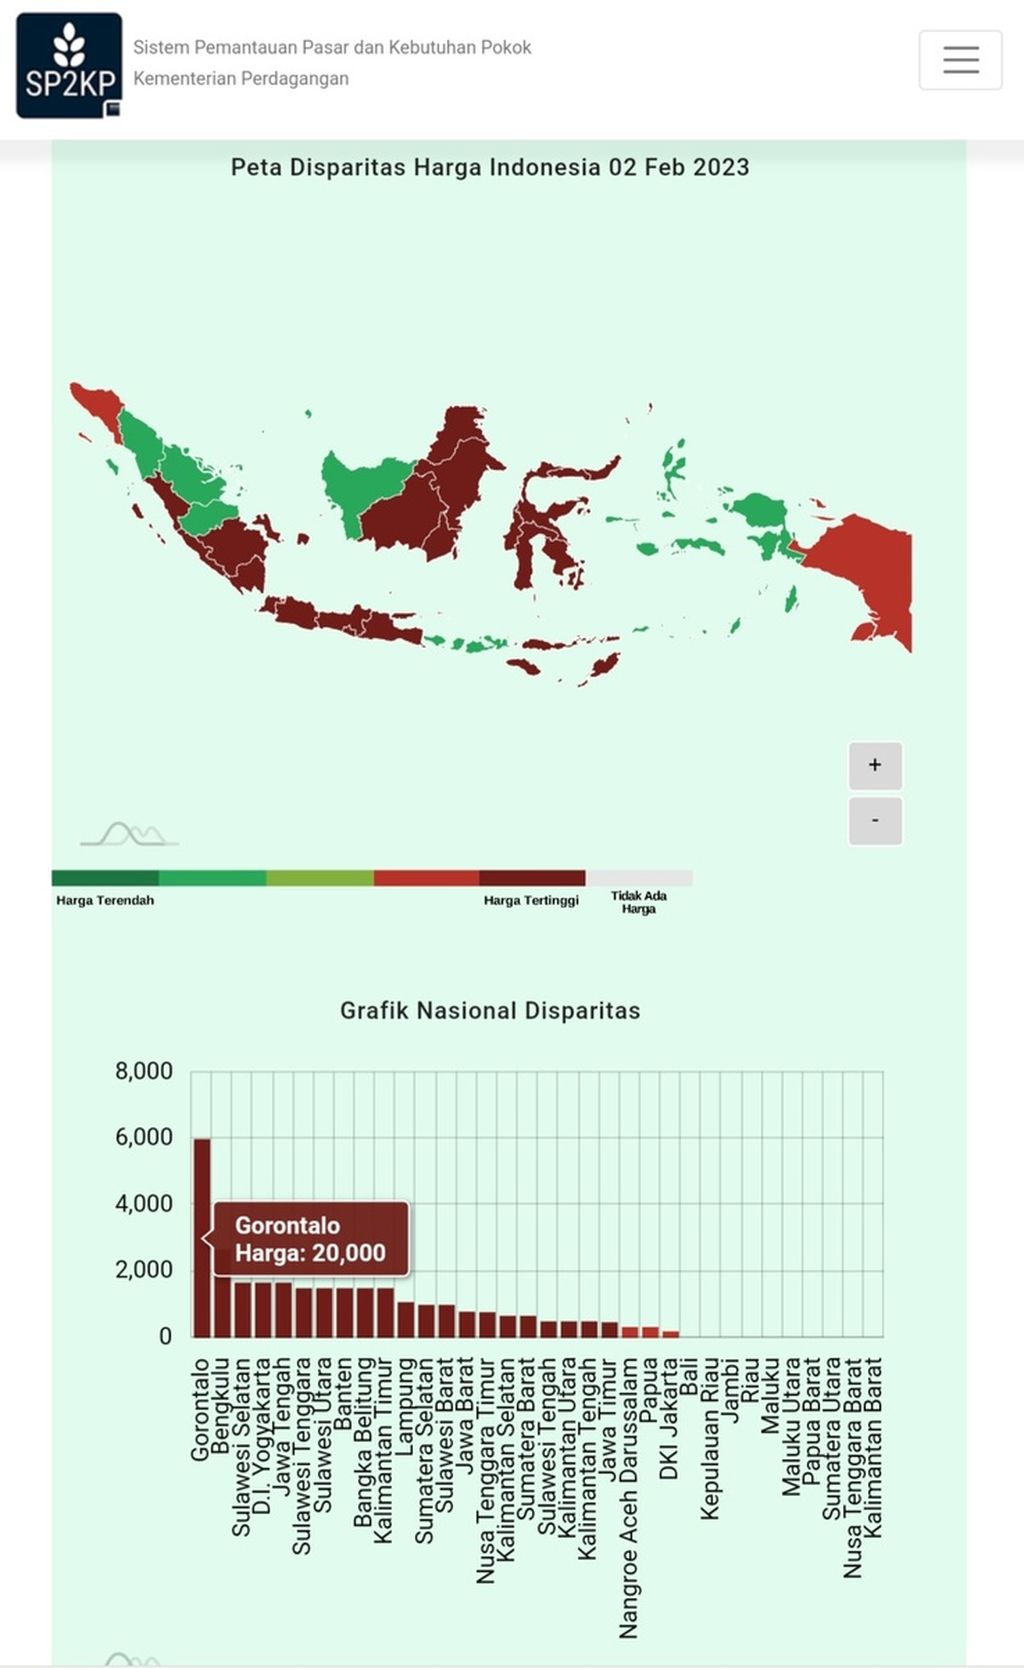 Disparitas harga Minyakita di sejumlah daerah di Indonesia.